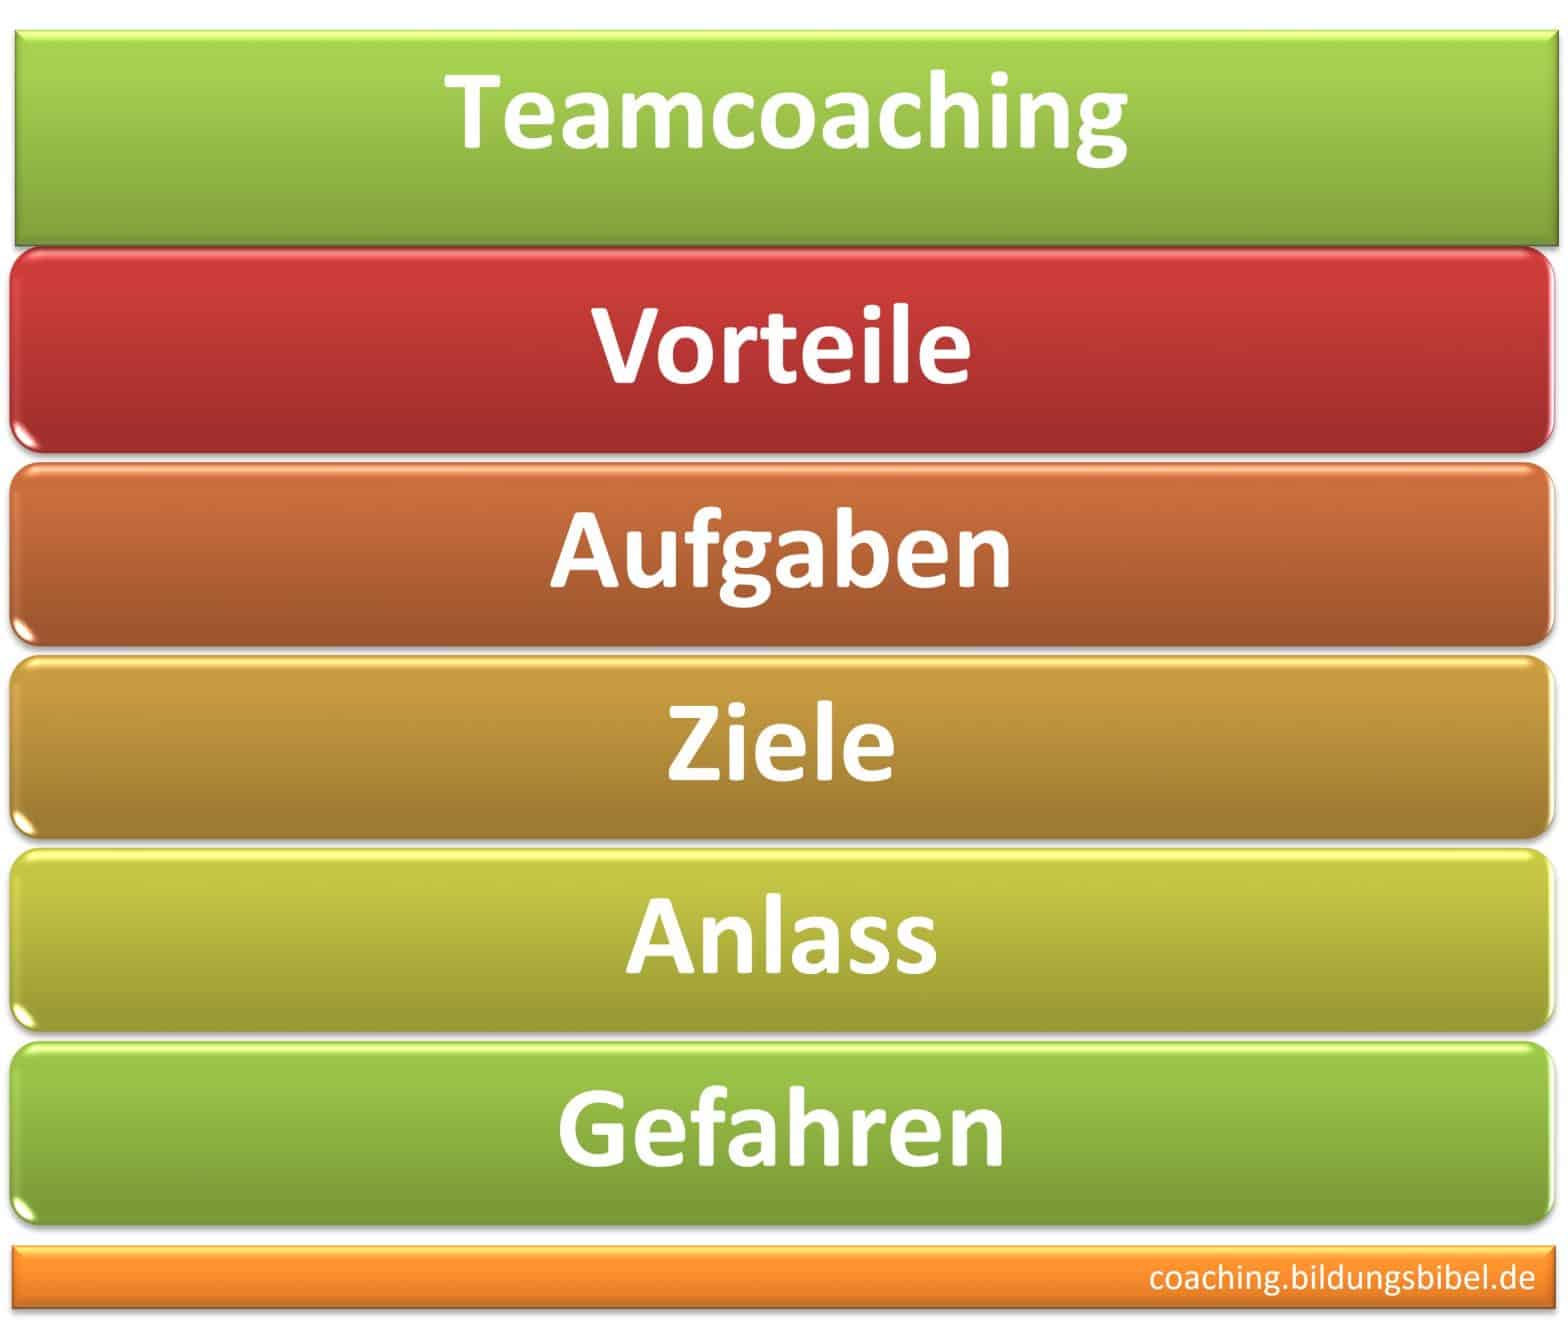 Teamcoaching, Teams coachen, Vorteile, Aufgaben, Ziele und Anlass, Gefahren, Kosten, Coach für Teams, Kommunikation, Was ist Teamcoaching?